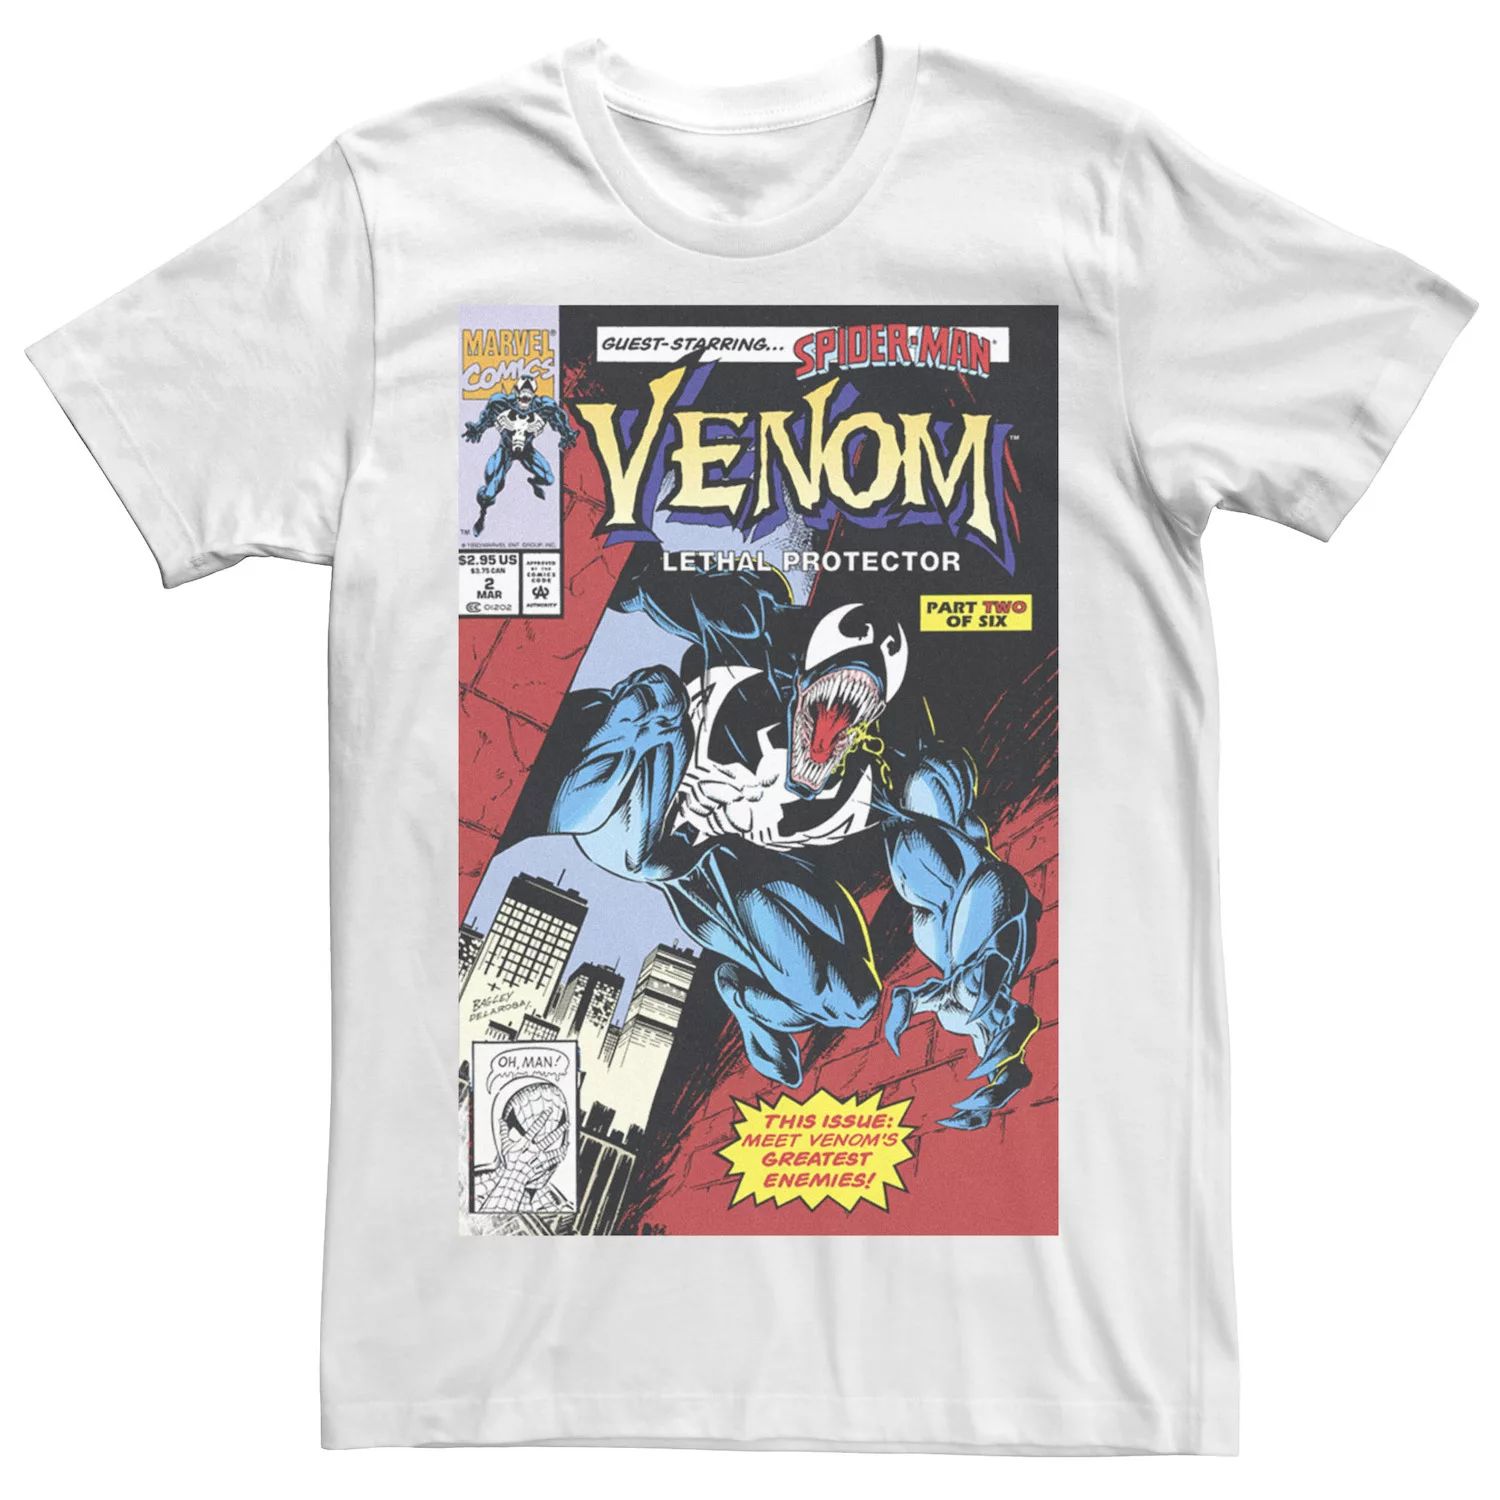 Мужская футболка Venom Lethal Protector в стиле ретро с комиксами Marvel, белый